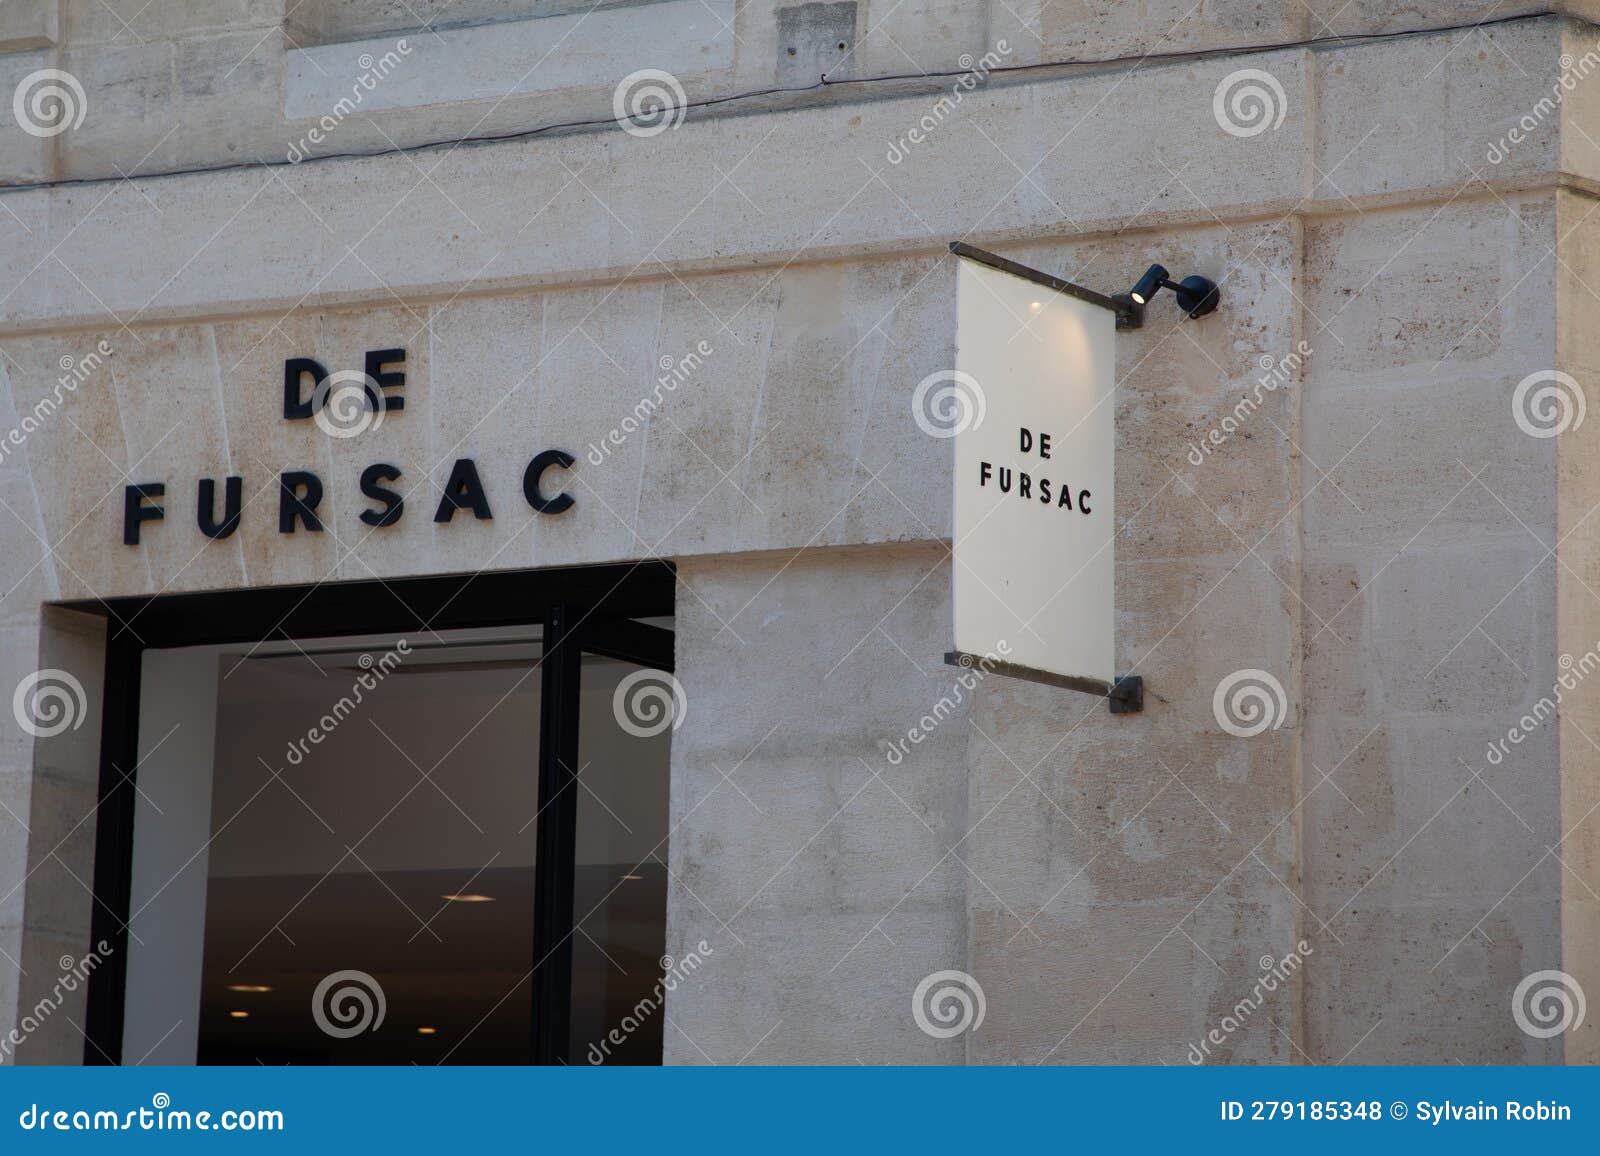 De Fursac Logo Brand and Text Sign on Wall Facade Shop Entrance in City ...